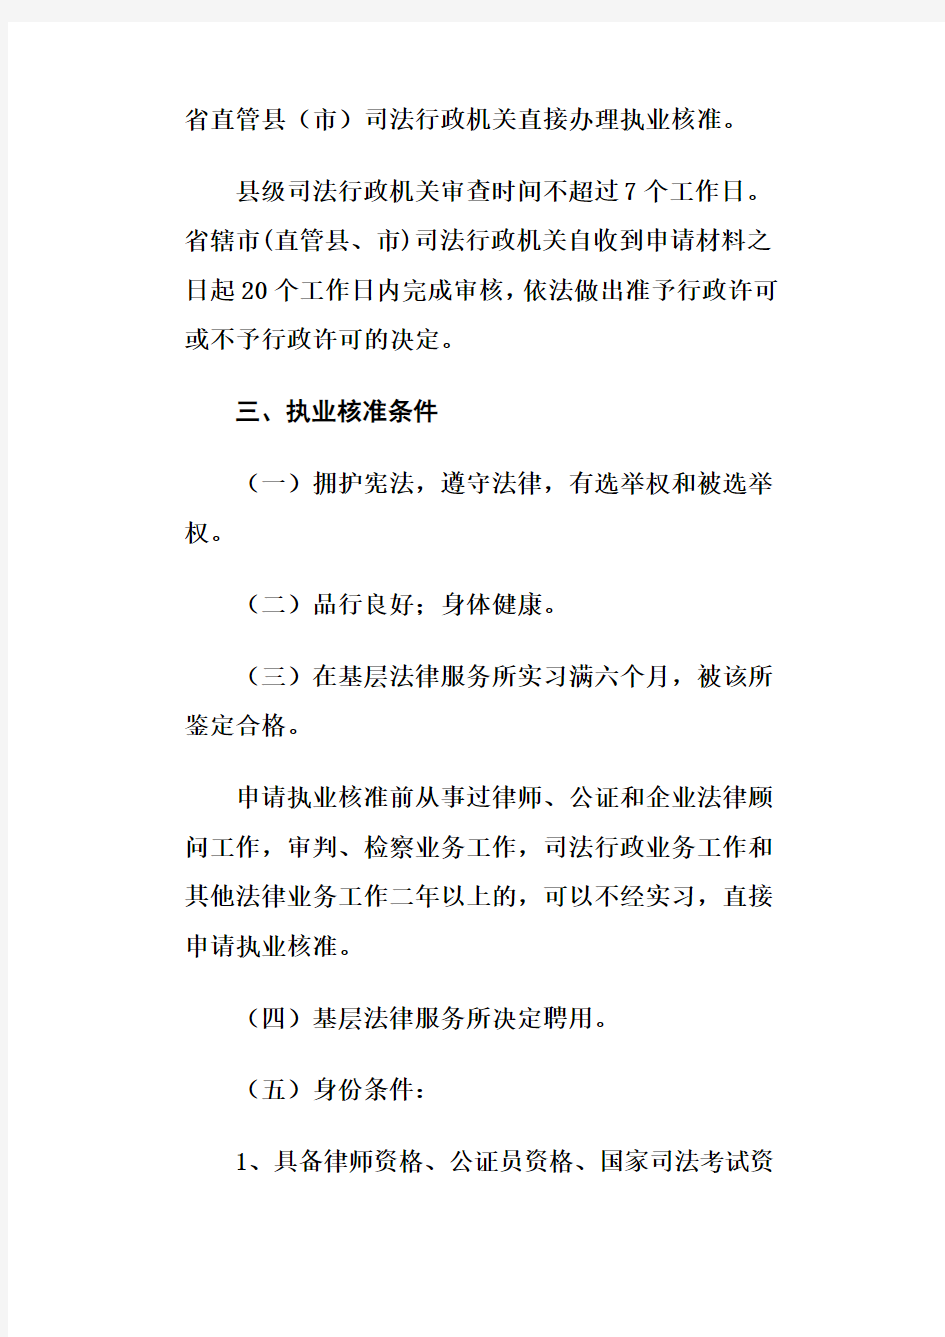 河南省司法厅关于进一步规范基层法律服务监管工作的通知